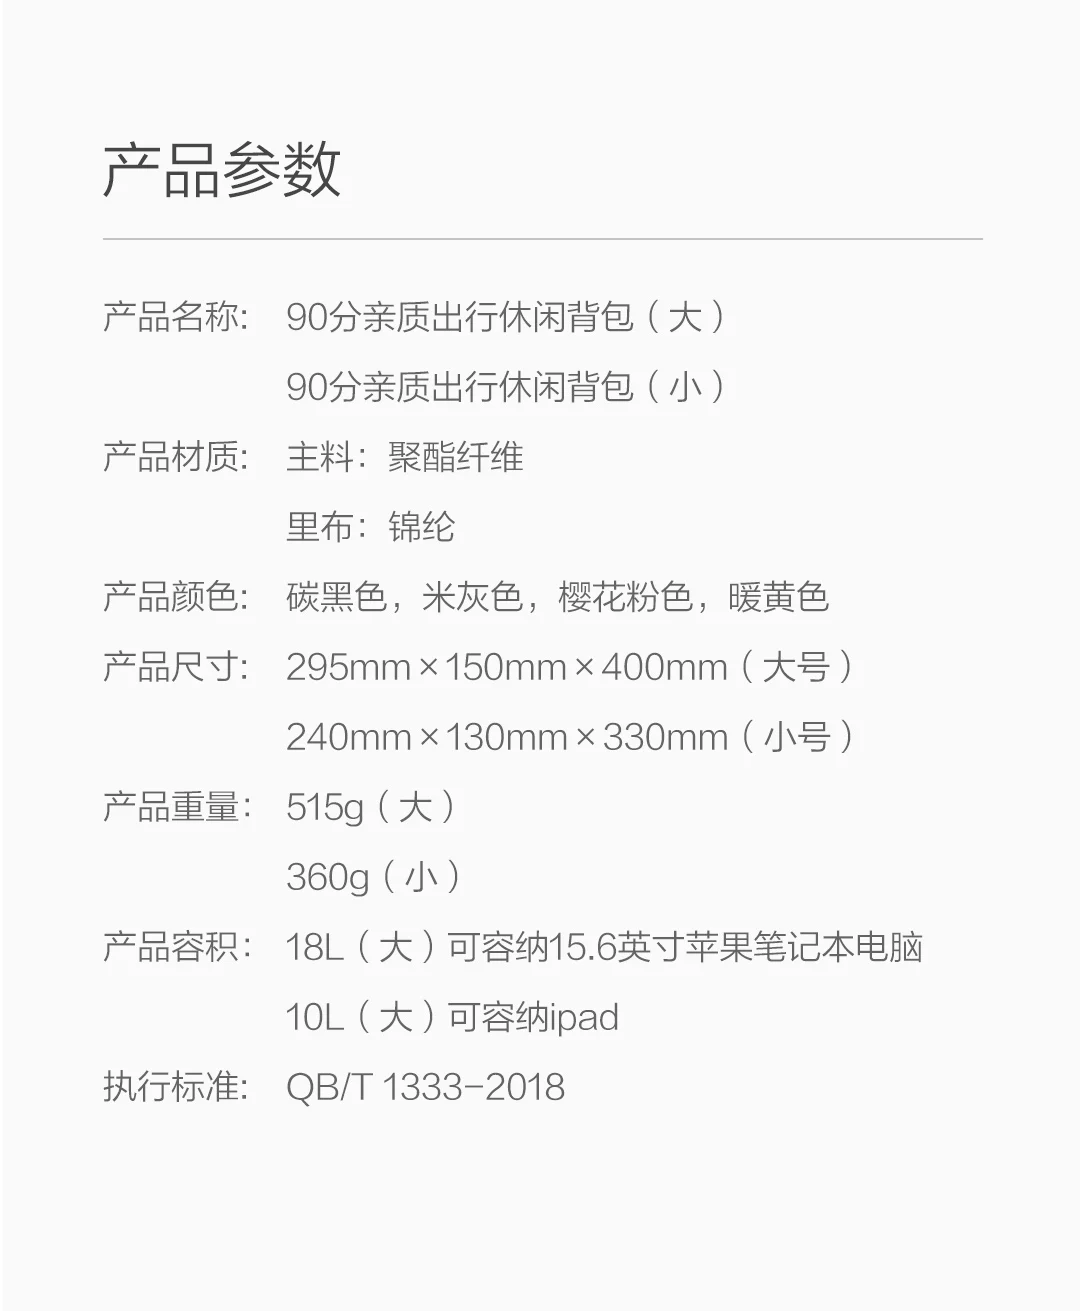 Xiaomi 90fun Backpack Ipx4 Water Repellent WaterProof Unisex 18L/10L School Bag Laptop Bags for Women Men Kids Children